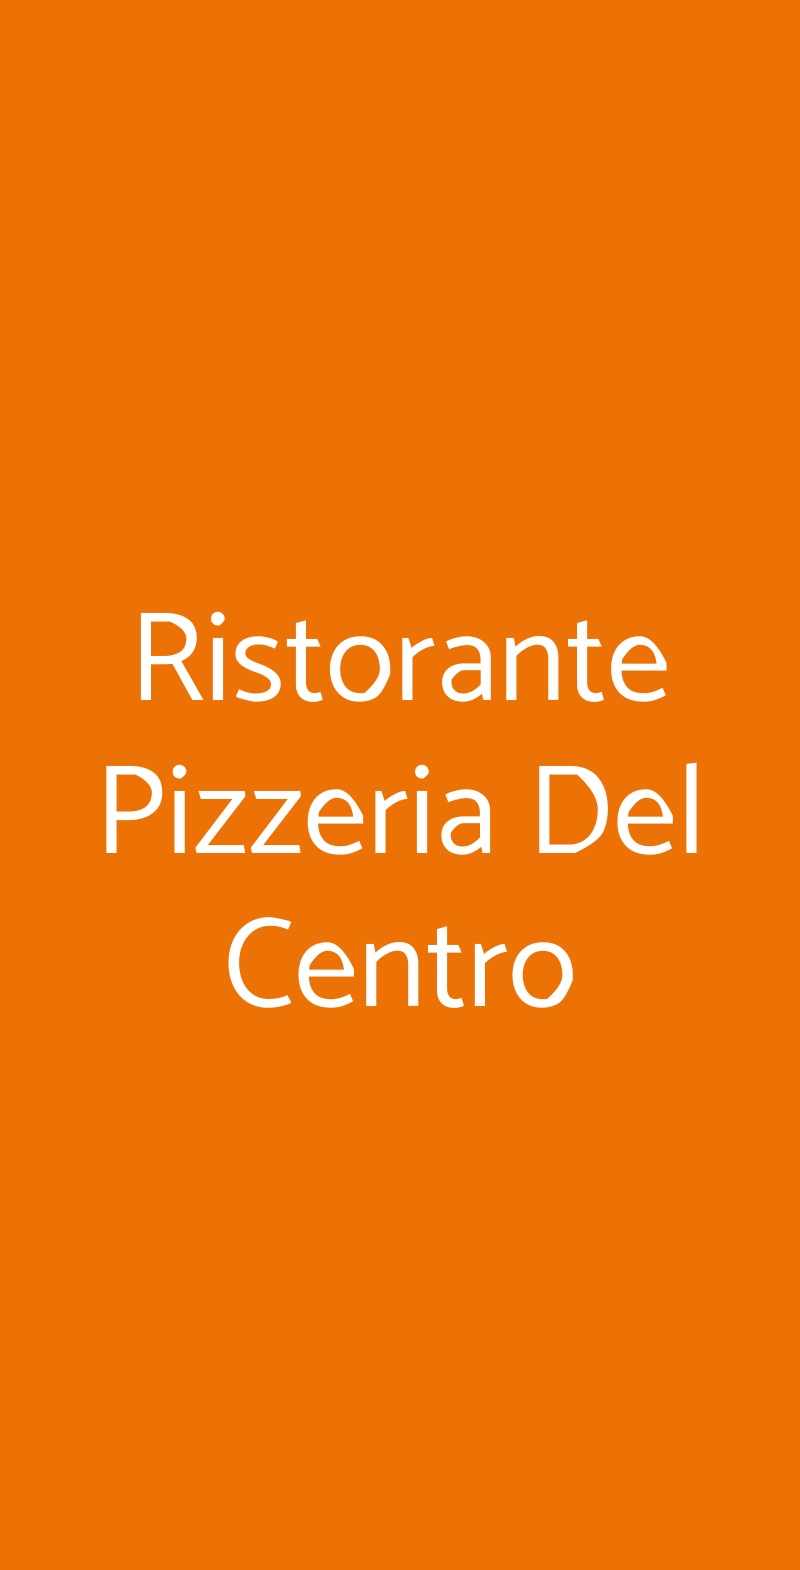 Ristorante Pizzeria Del Centro Monza menù 1 pagina